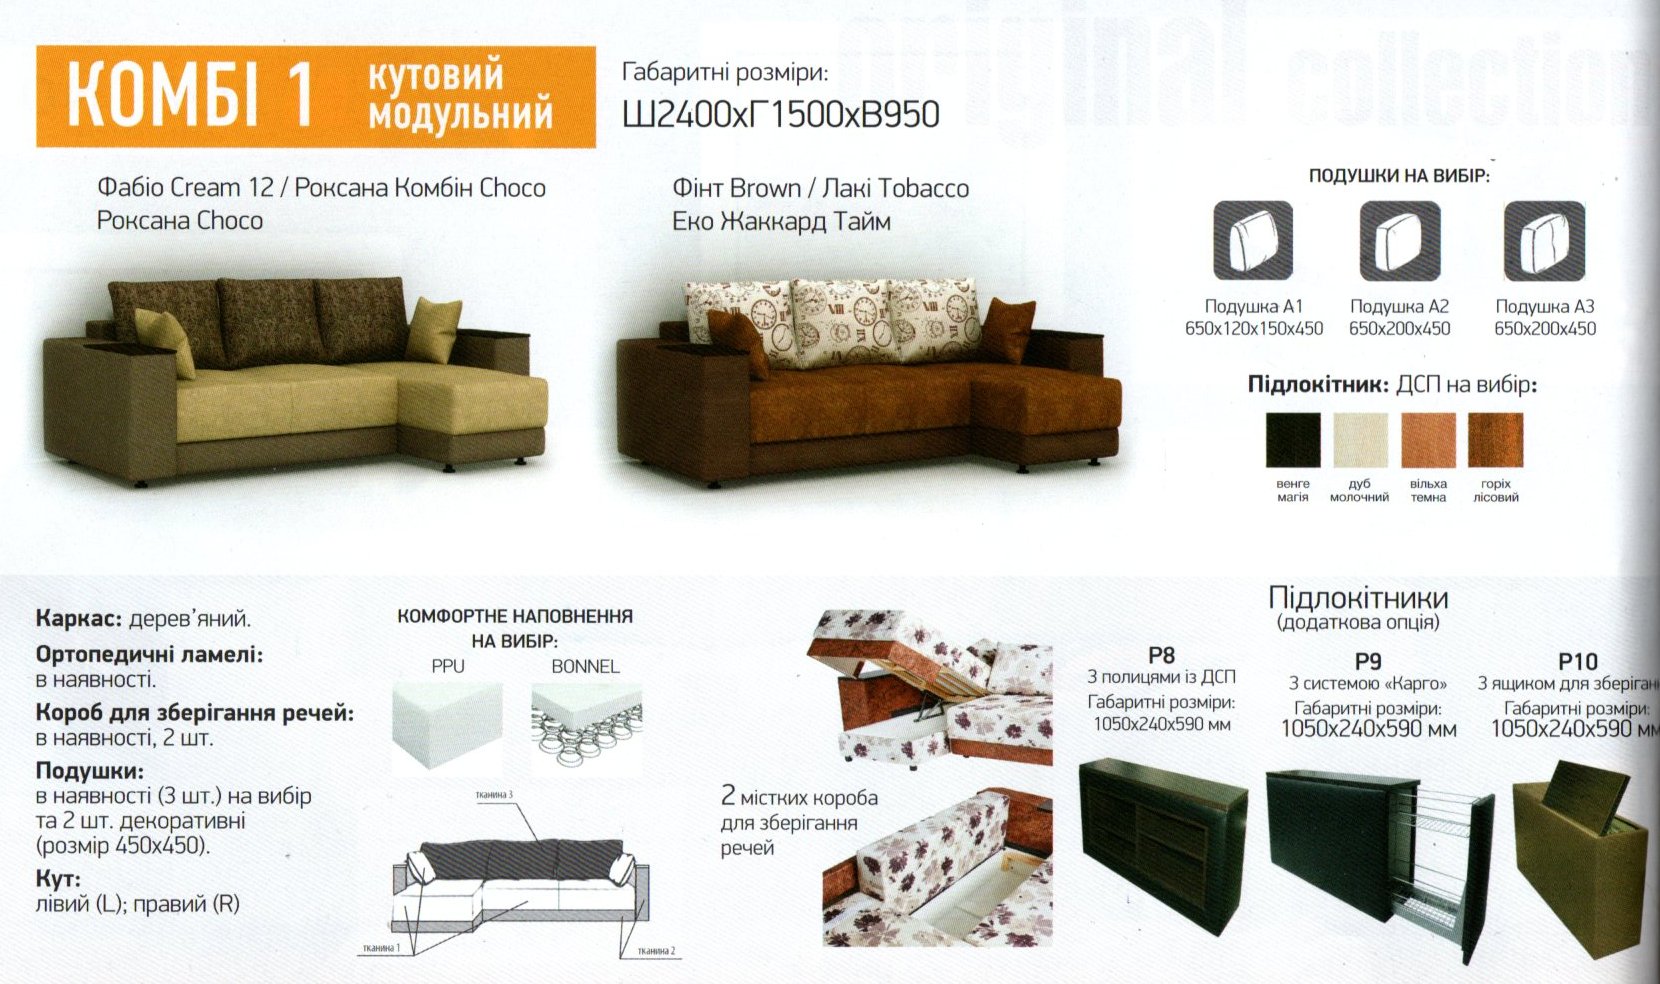 Софино Мебель Украина Интернет Магазин